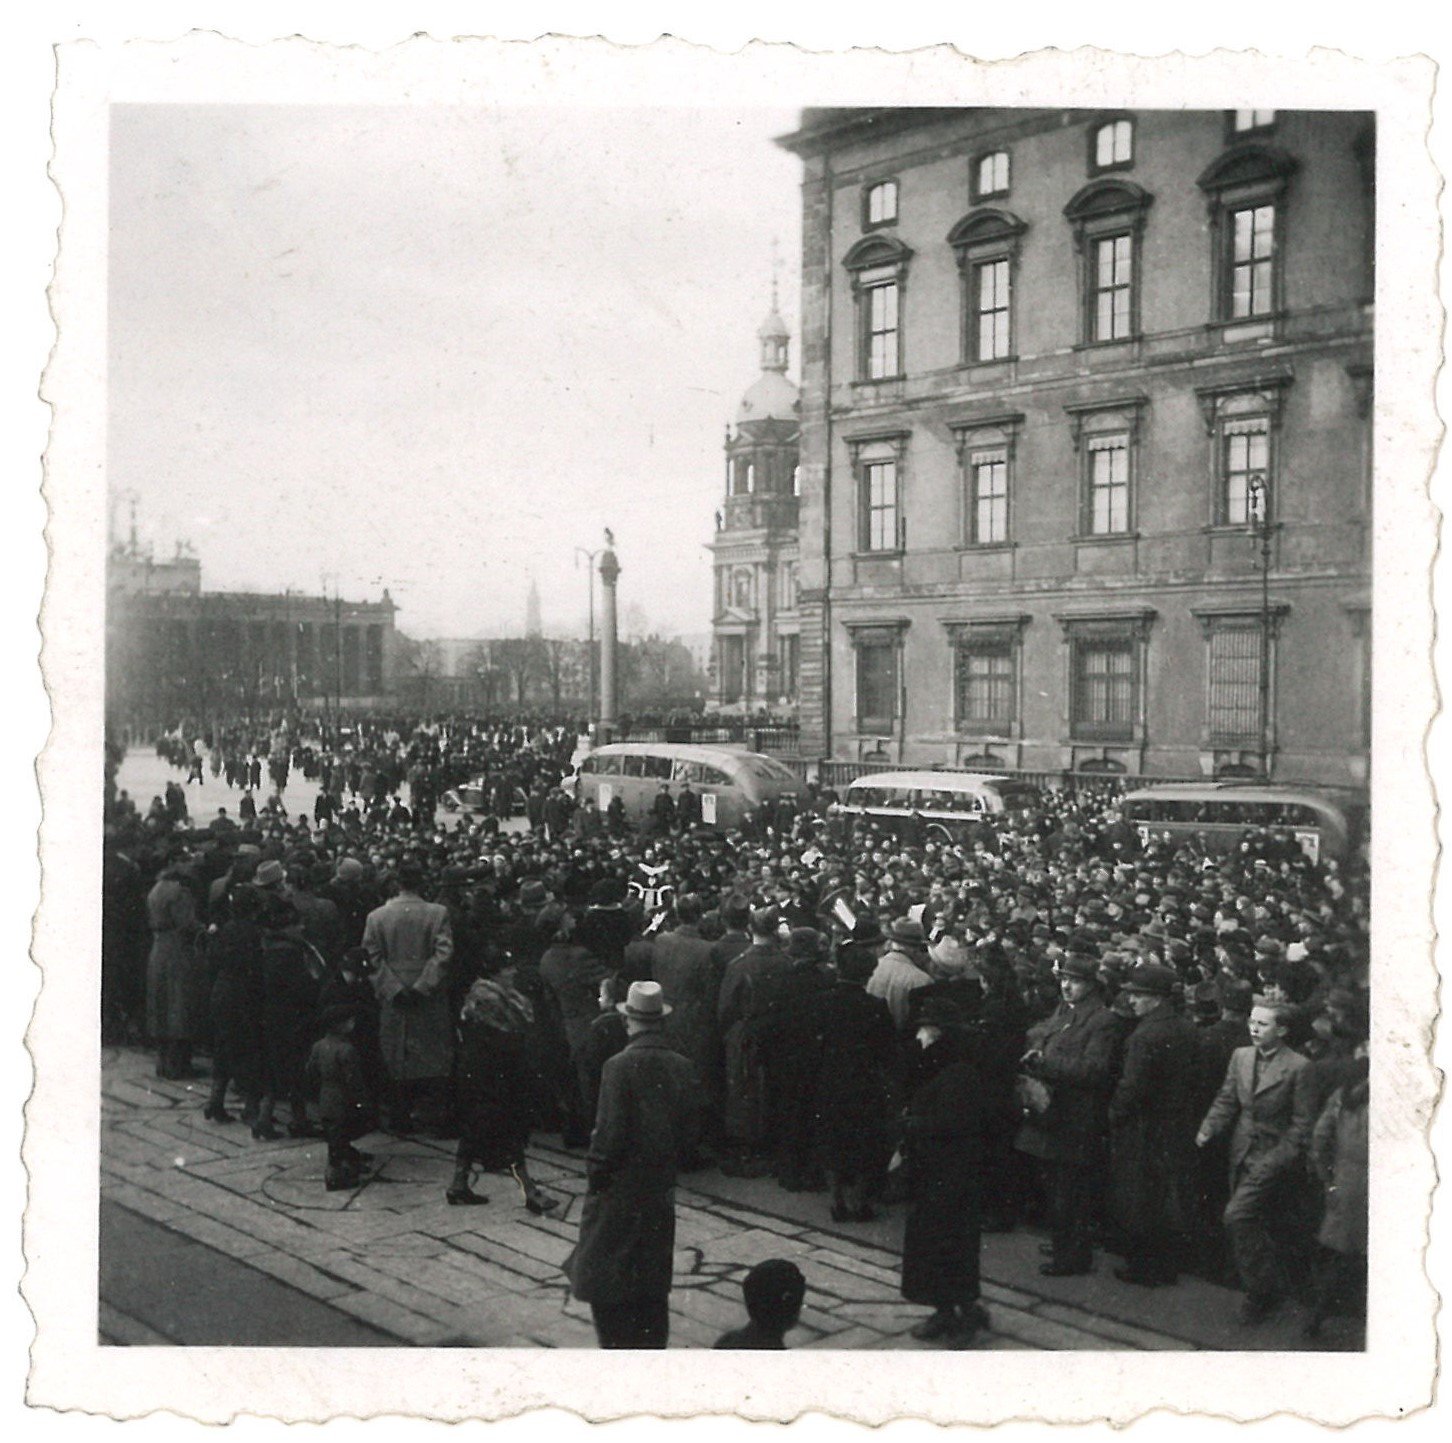 Berlin-Mitte: Menschenmenge auf der Schlossfreiheit (Landesgeschichtliche Vereinigung für die Mark Brandenburg e.V., Archiv CC BY)